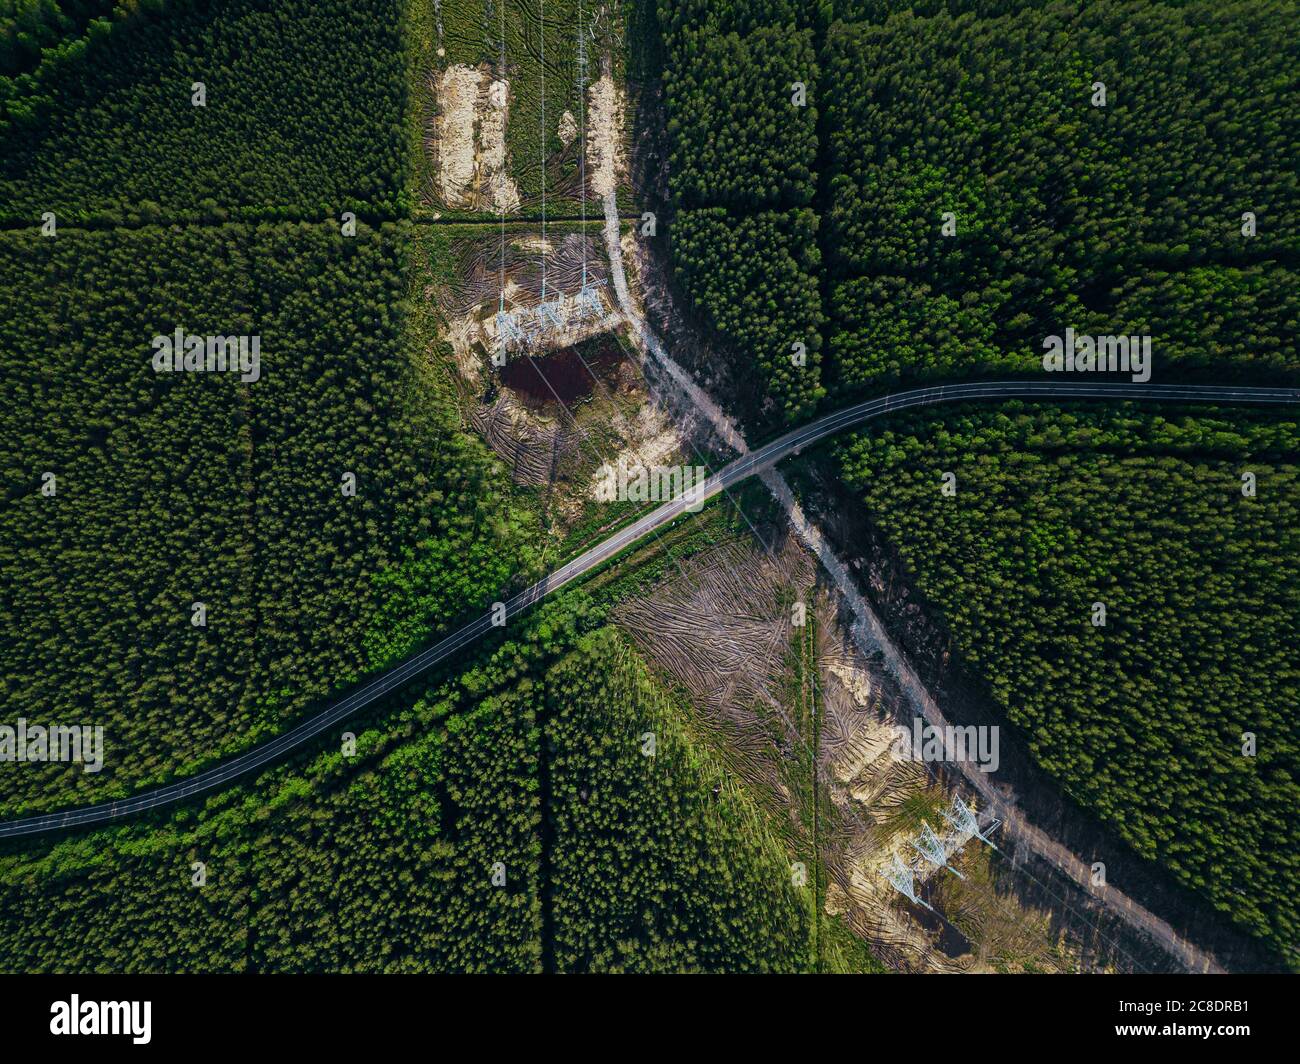 Russia, Leningrado Oblast, Tikhvin, vista aerea dei piloni elettrici nel mezzo della zona deforestata Foto Stock